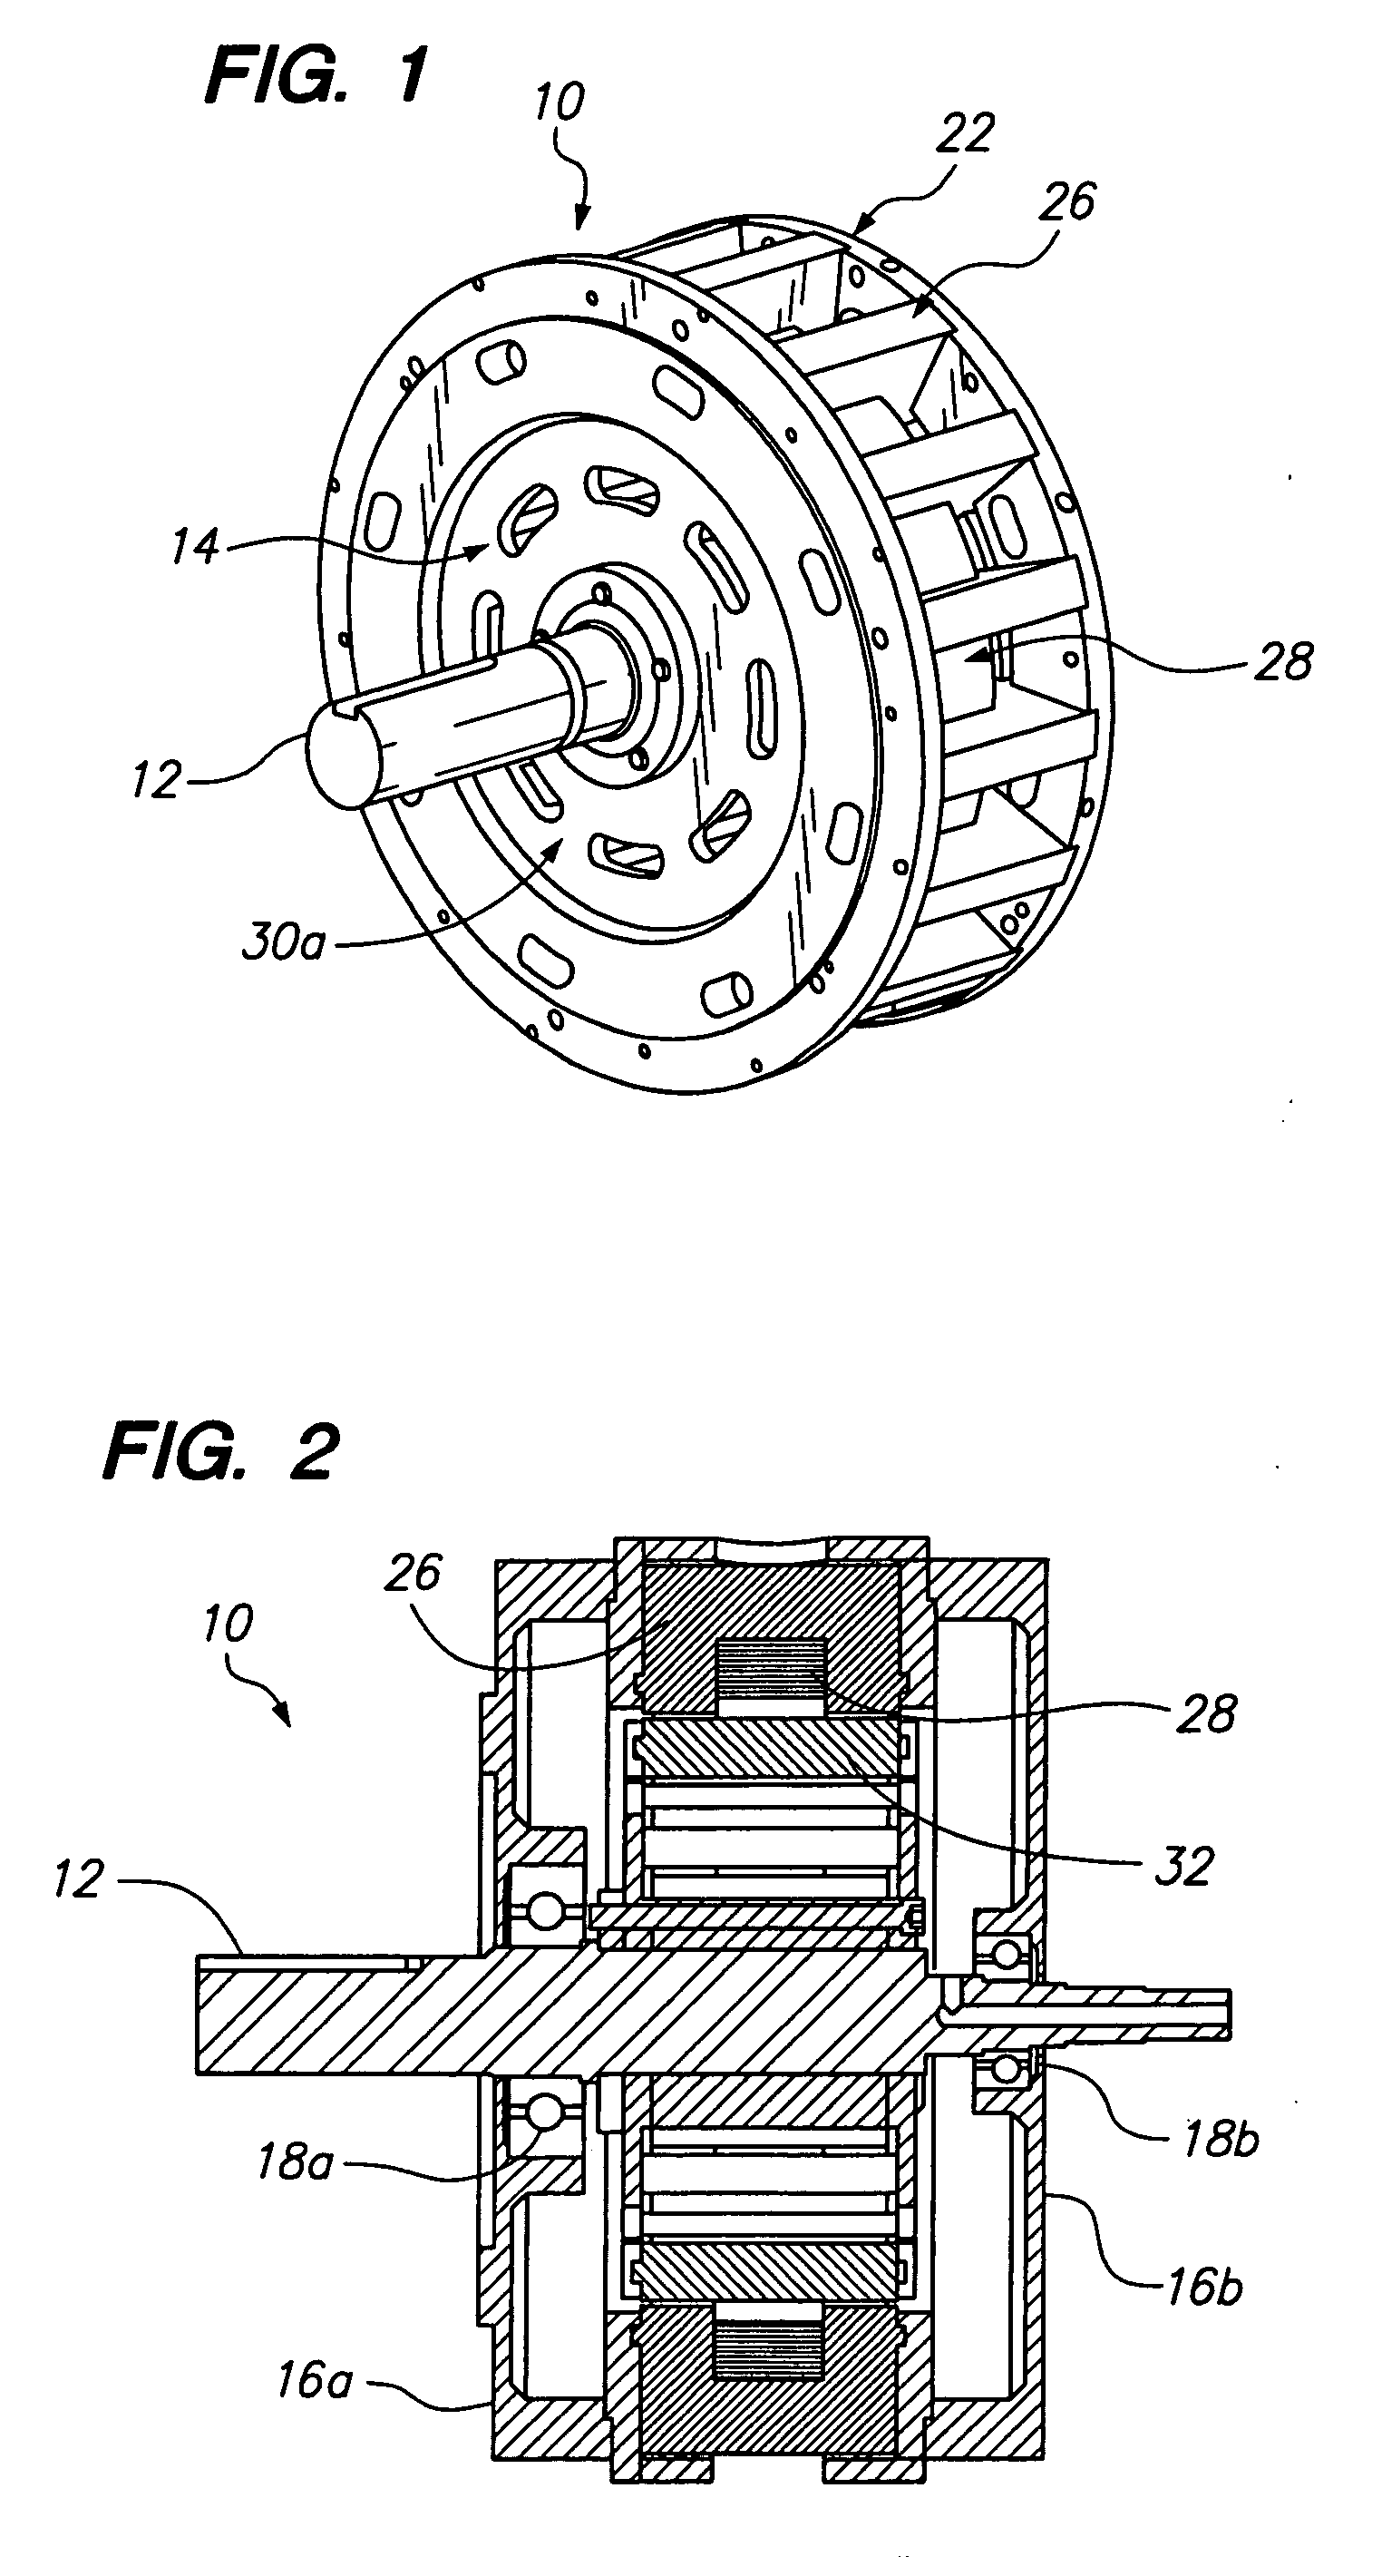 Toroidal AC motor